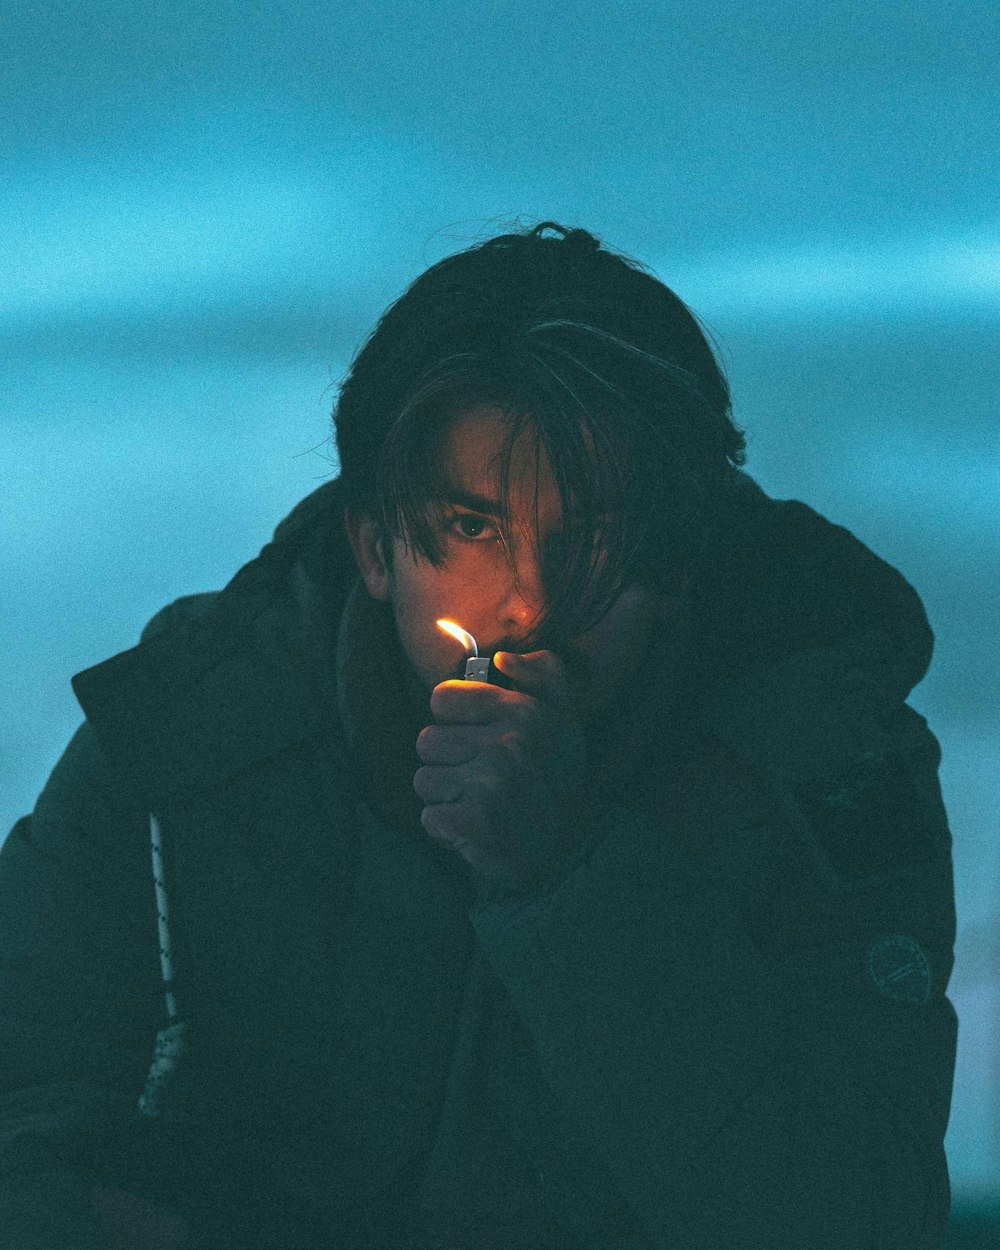 man in black jacket smoking cigarette